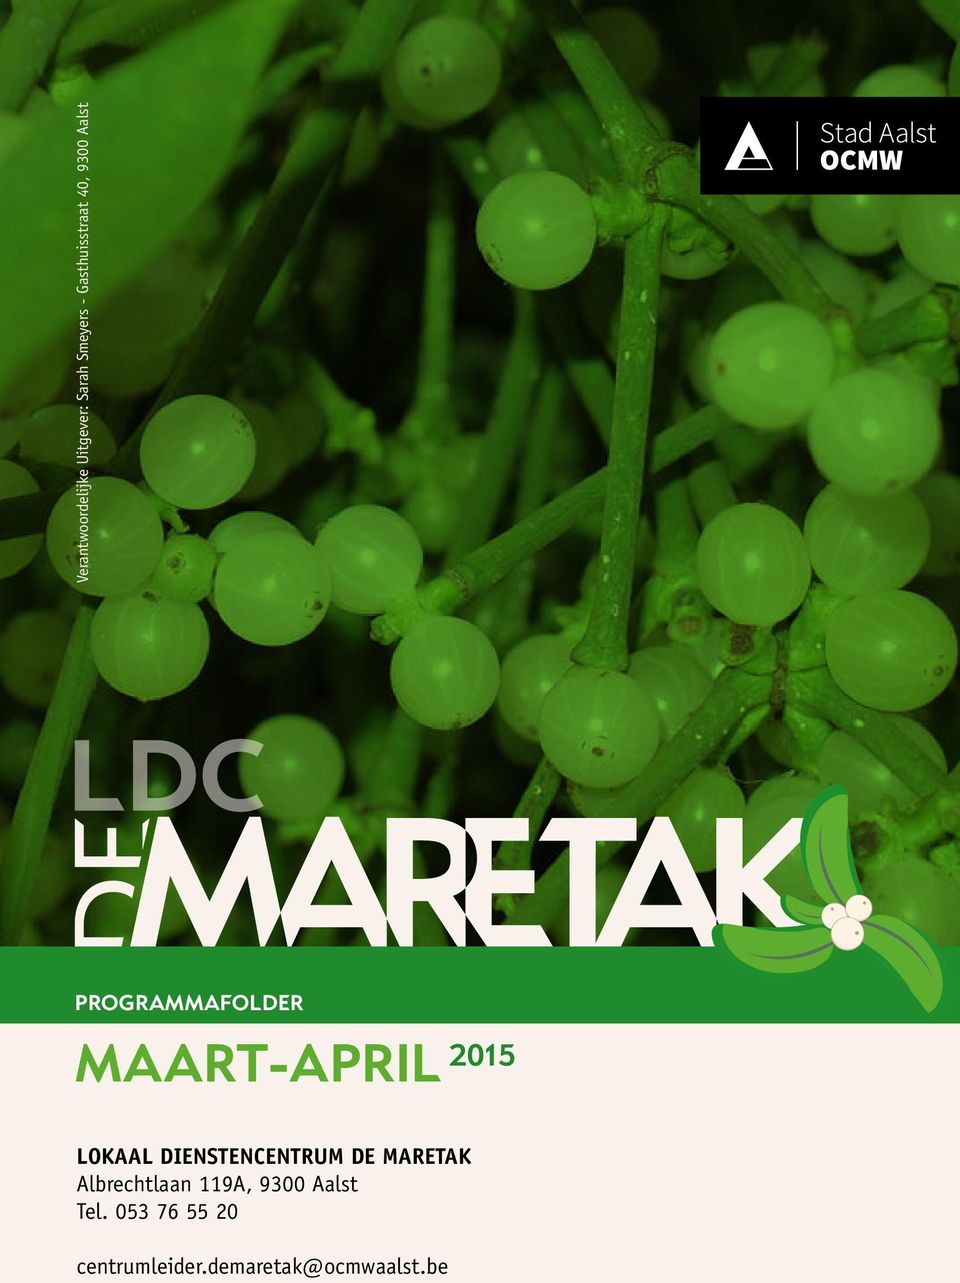 MAART-APRIL 2015 lokaal dienstencentrum de maretak